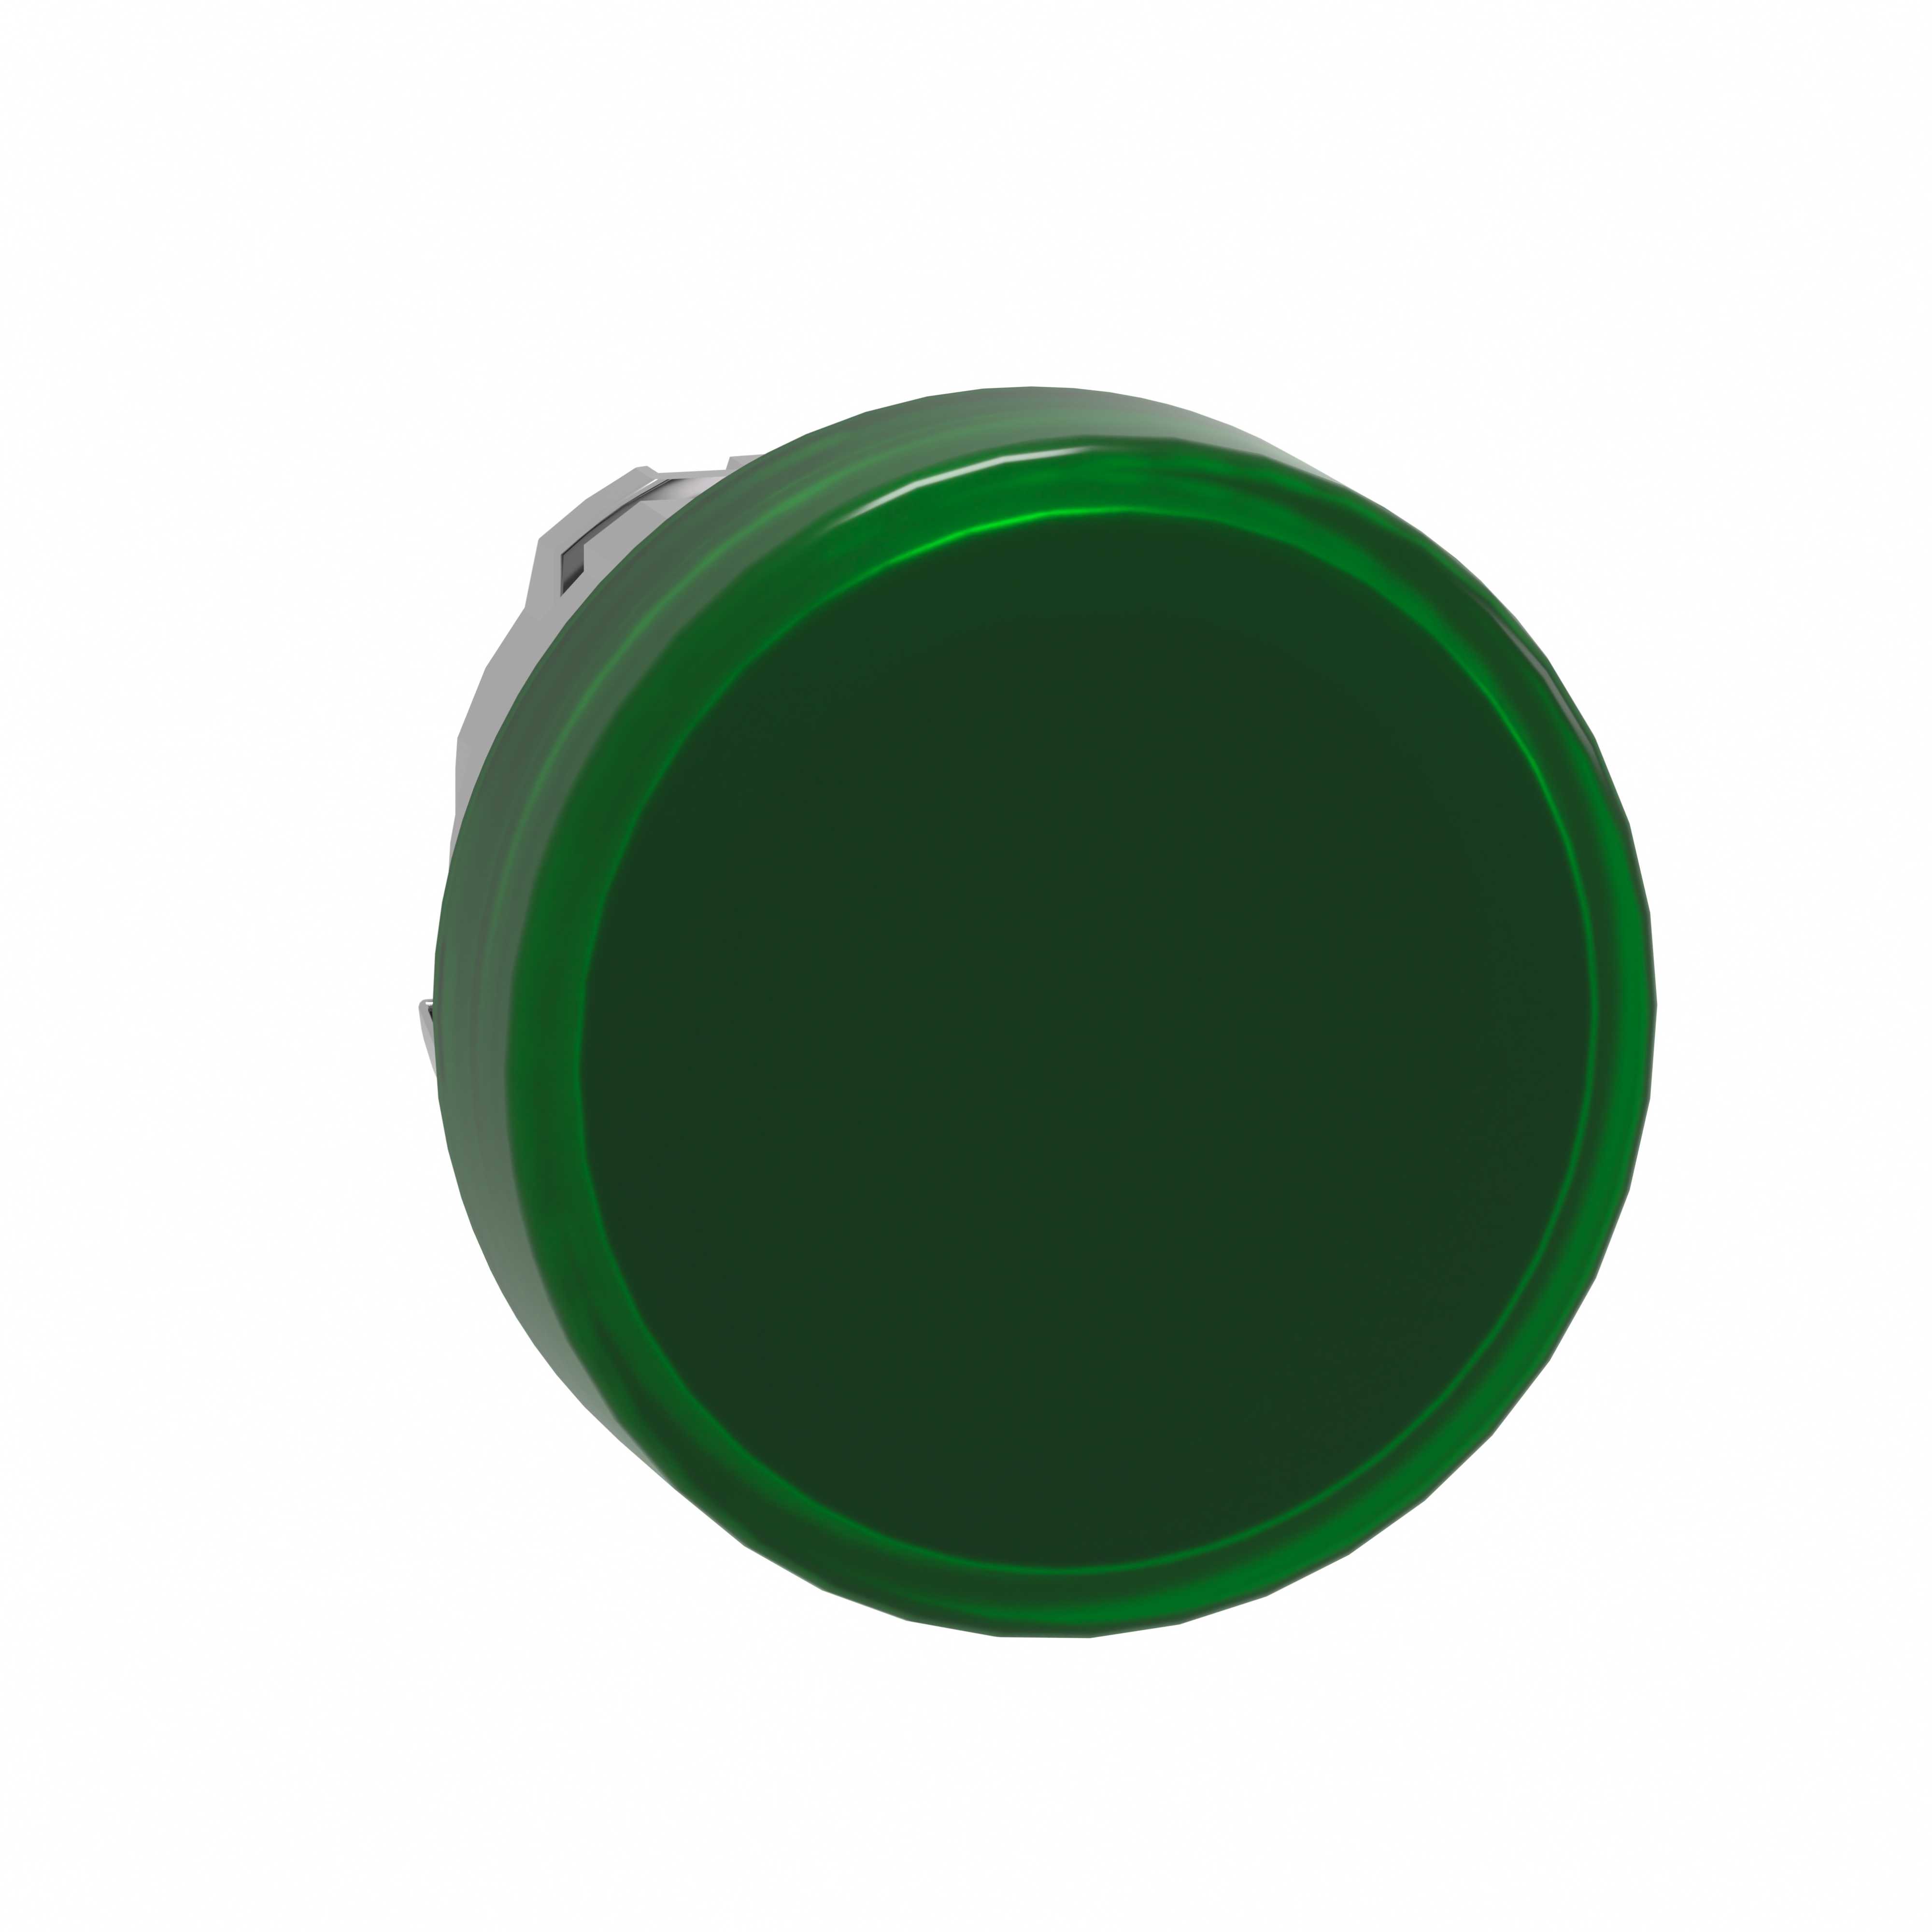 Schneider Electric - Signallampehode i metall for LED med linse i grønn farge